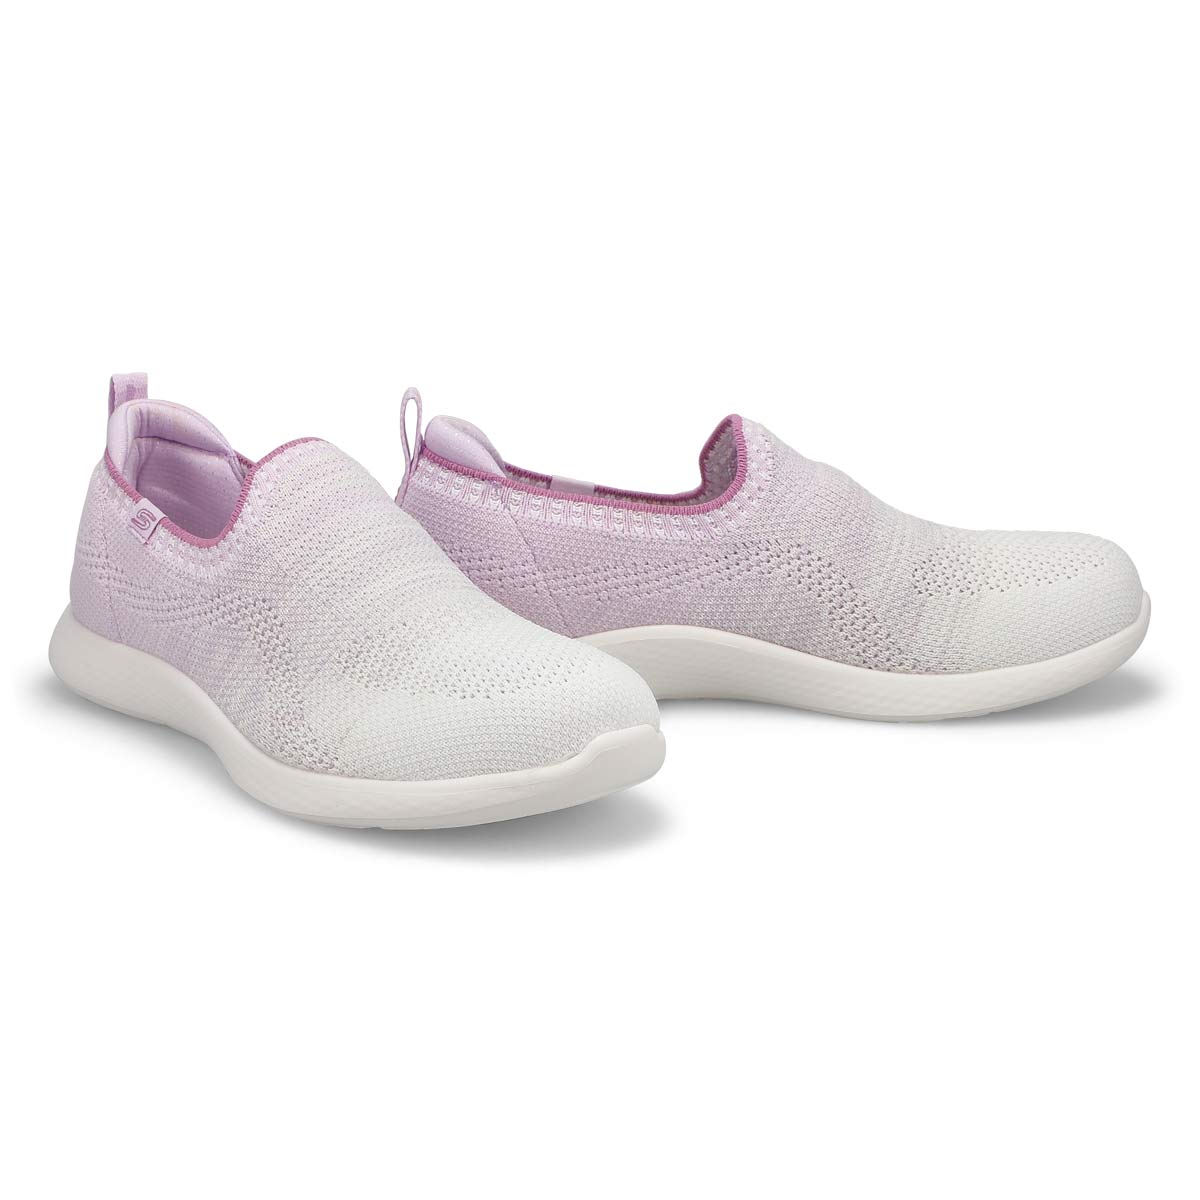 Women's Vapor Foam Lite Slip On Sneaker - Lavender